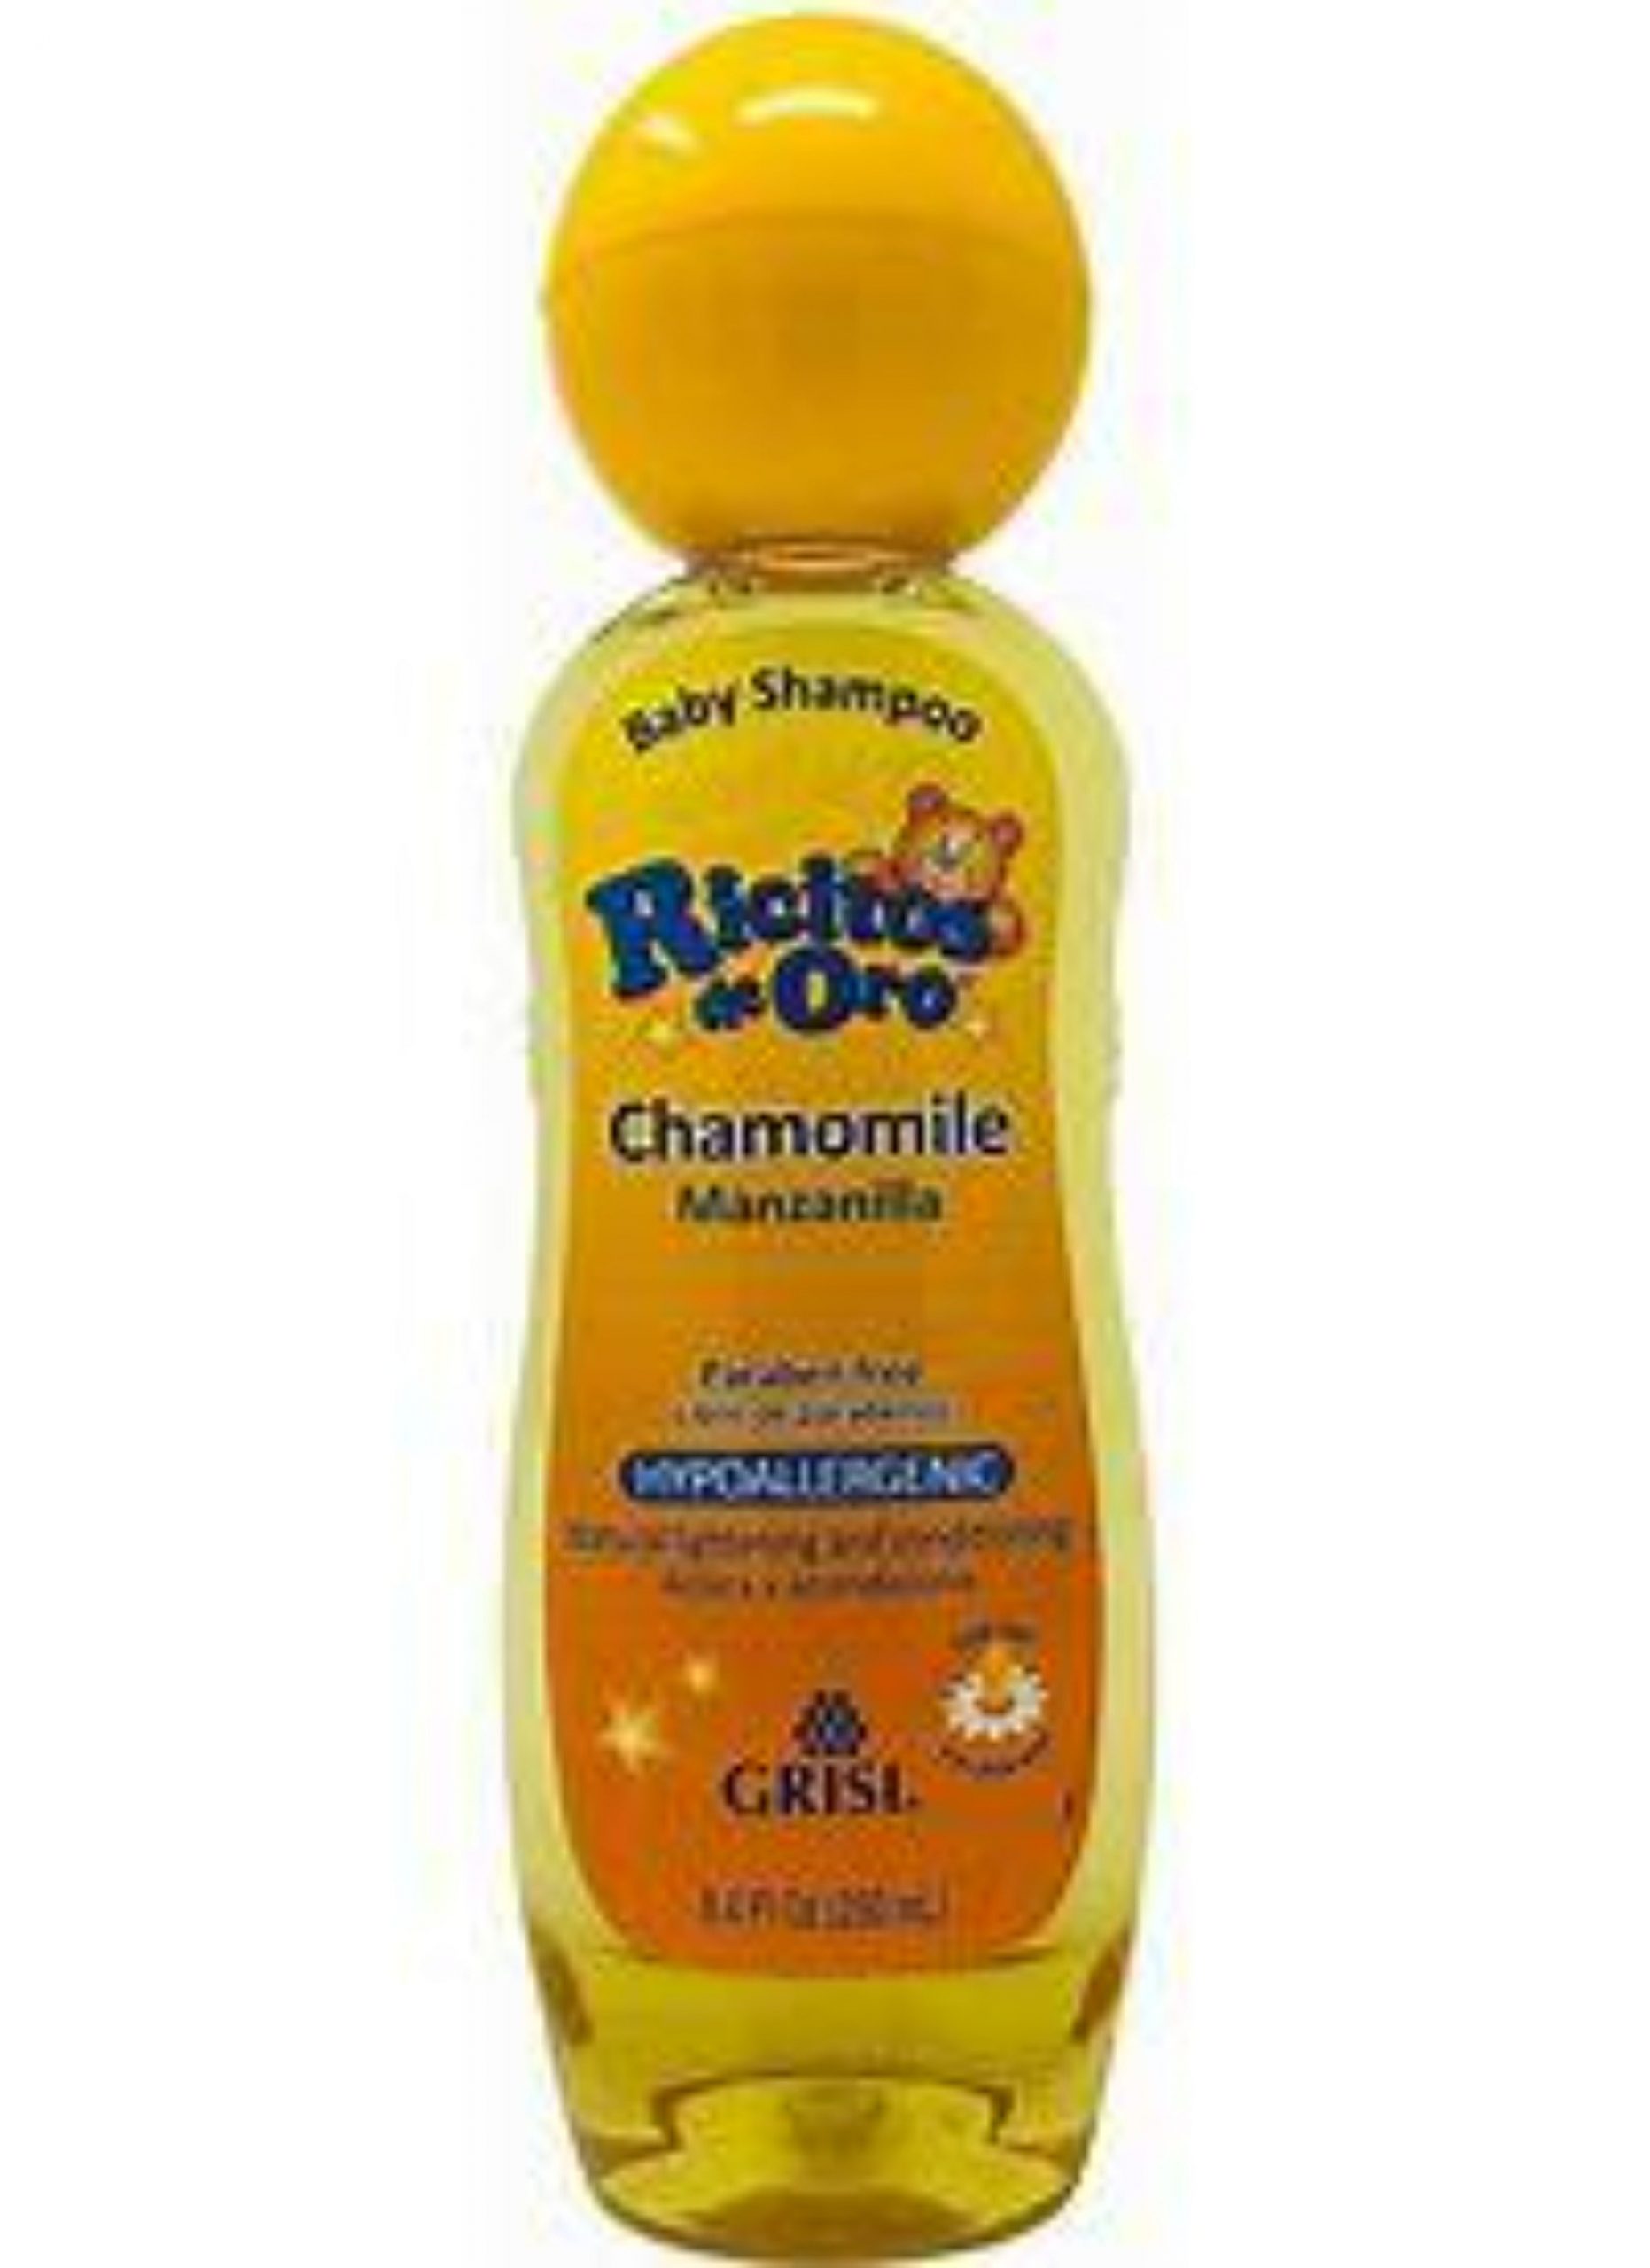 Grisi Ricitos de Oro Chamomile Shampoo 8.4 oz